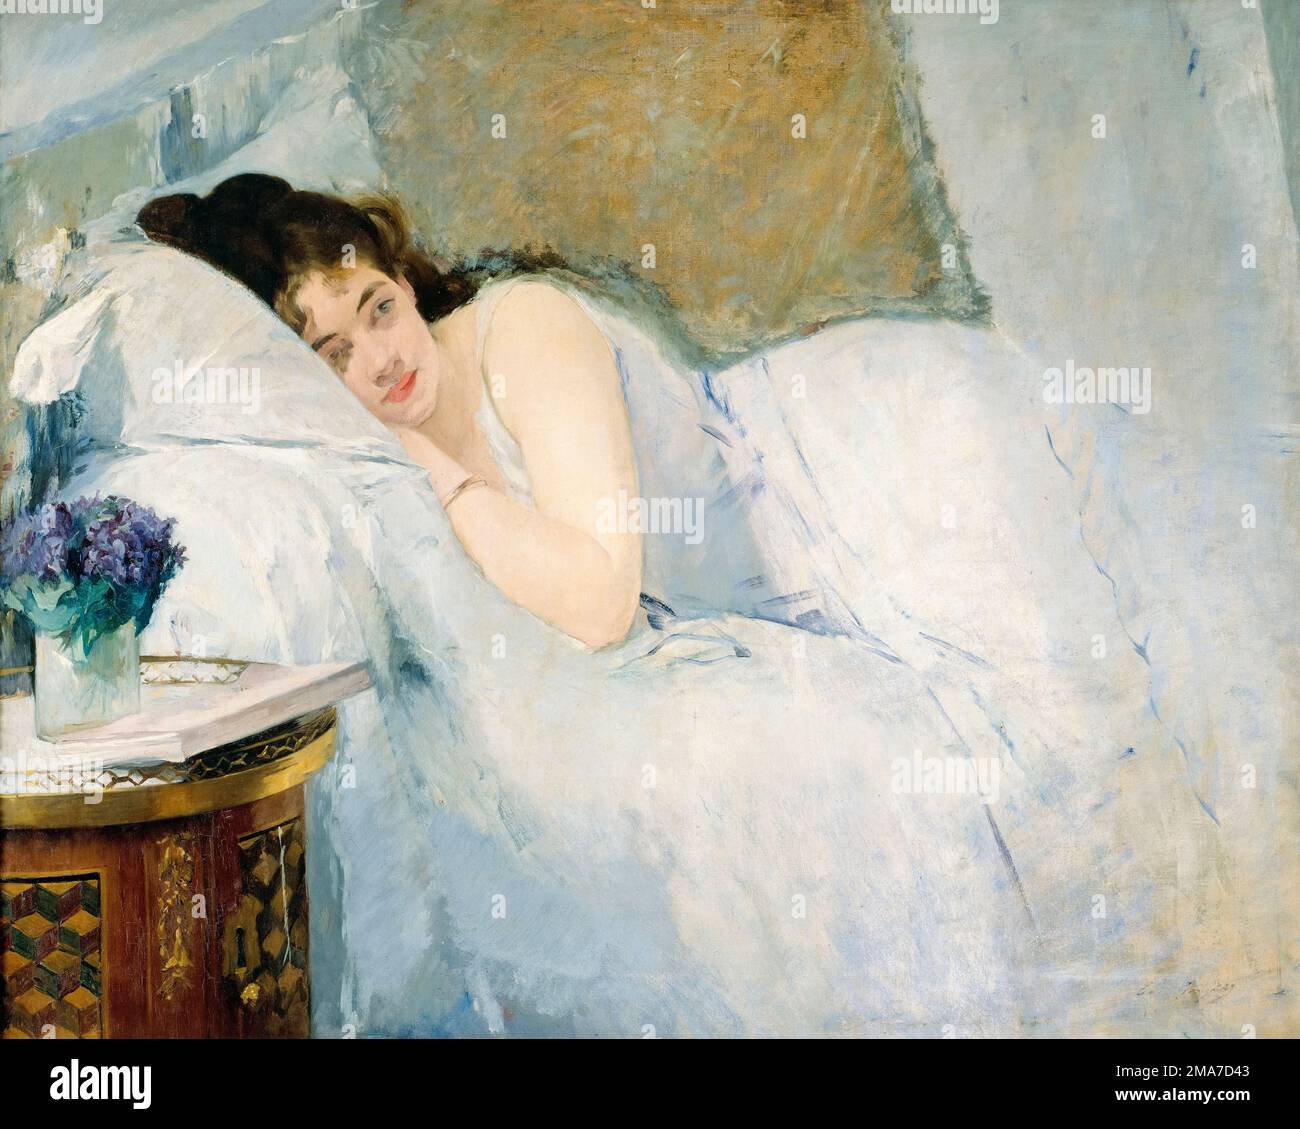 EVA Gonzalès, Awakening Girl, peinture à l'huile sur toile, 1877-1878 Banque D'Images